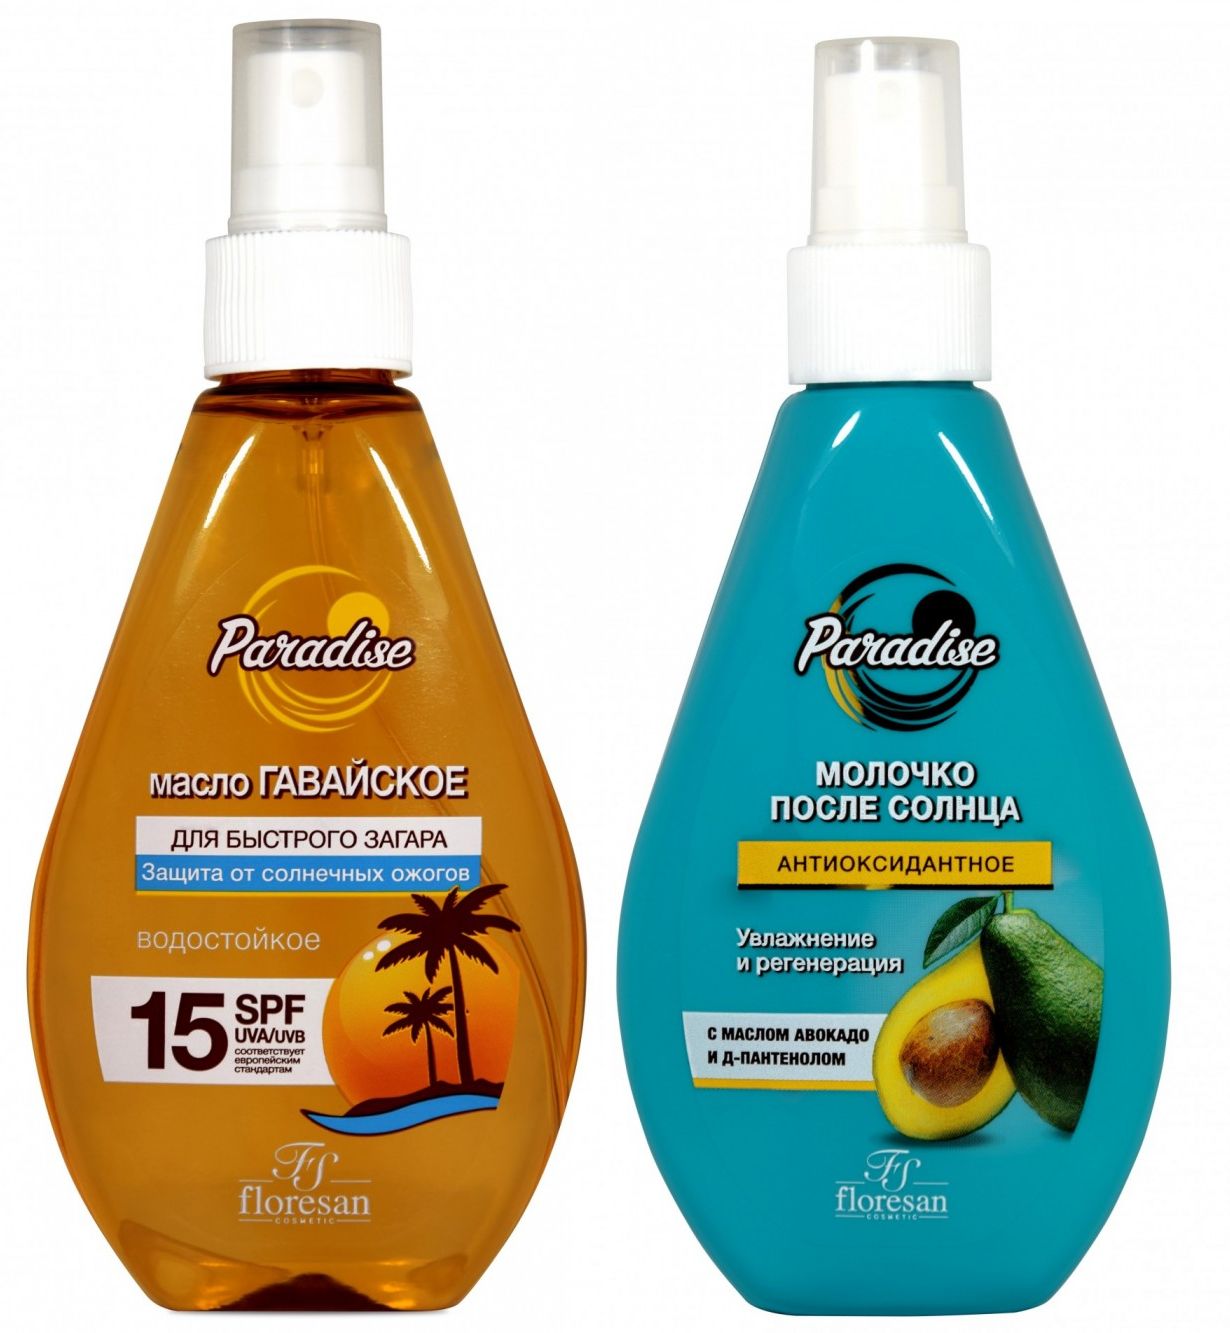 Набор Floresan Paradise масло для быстрого загара SPF15 и молочко после солнца 160 млх2 шт на восходе солнца